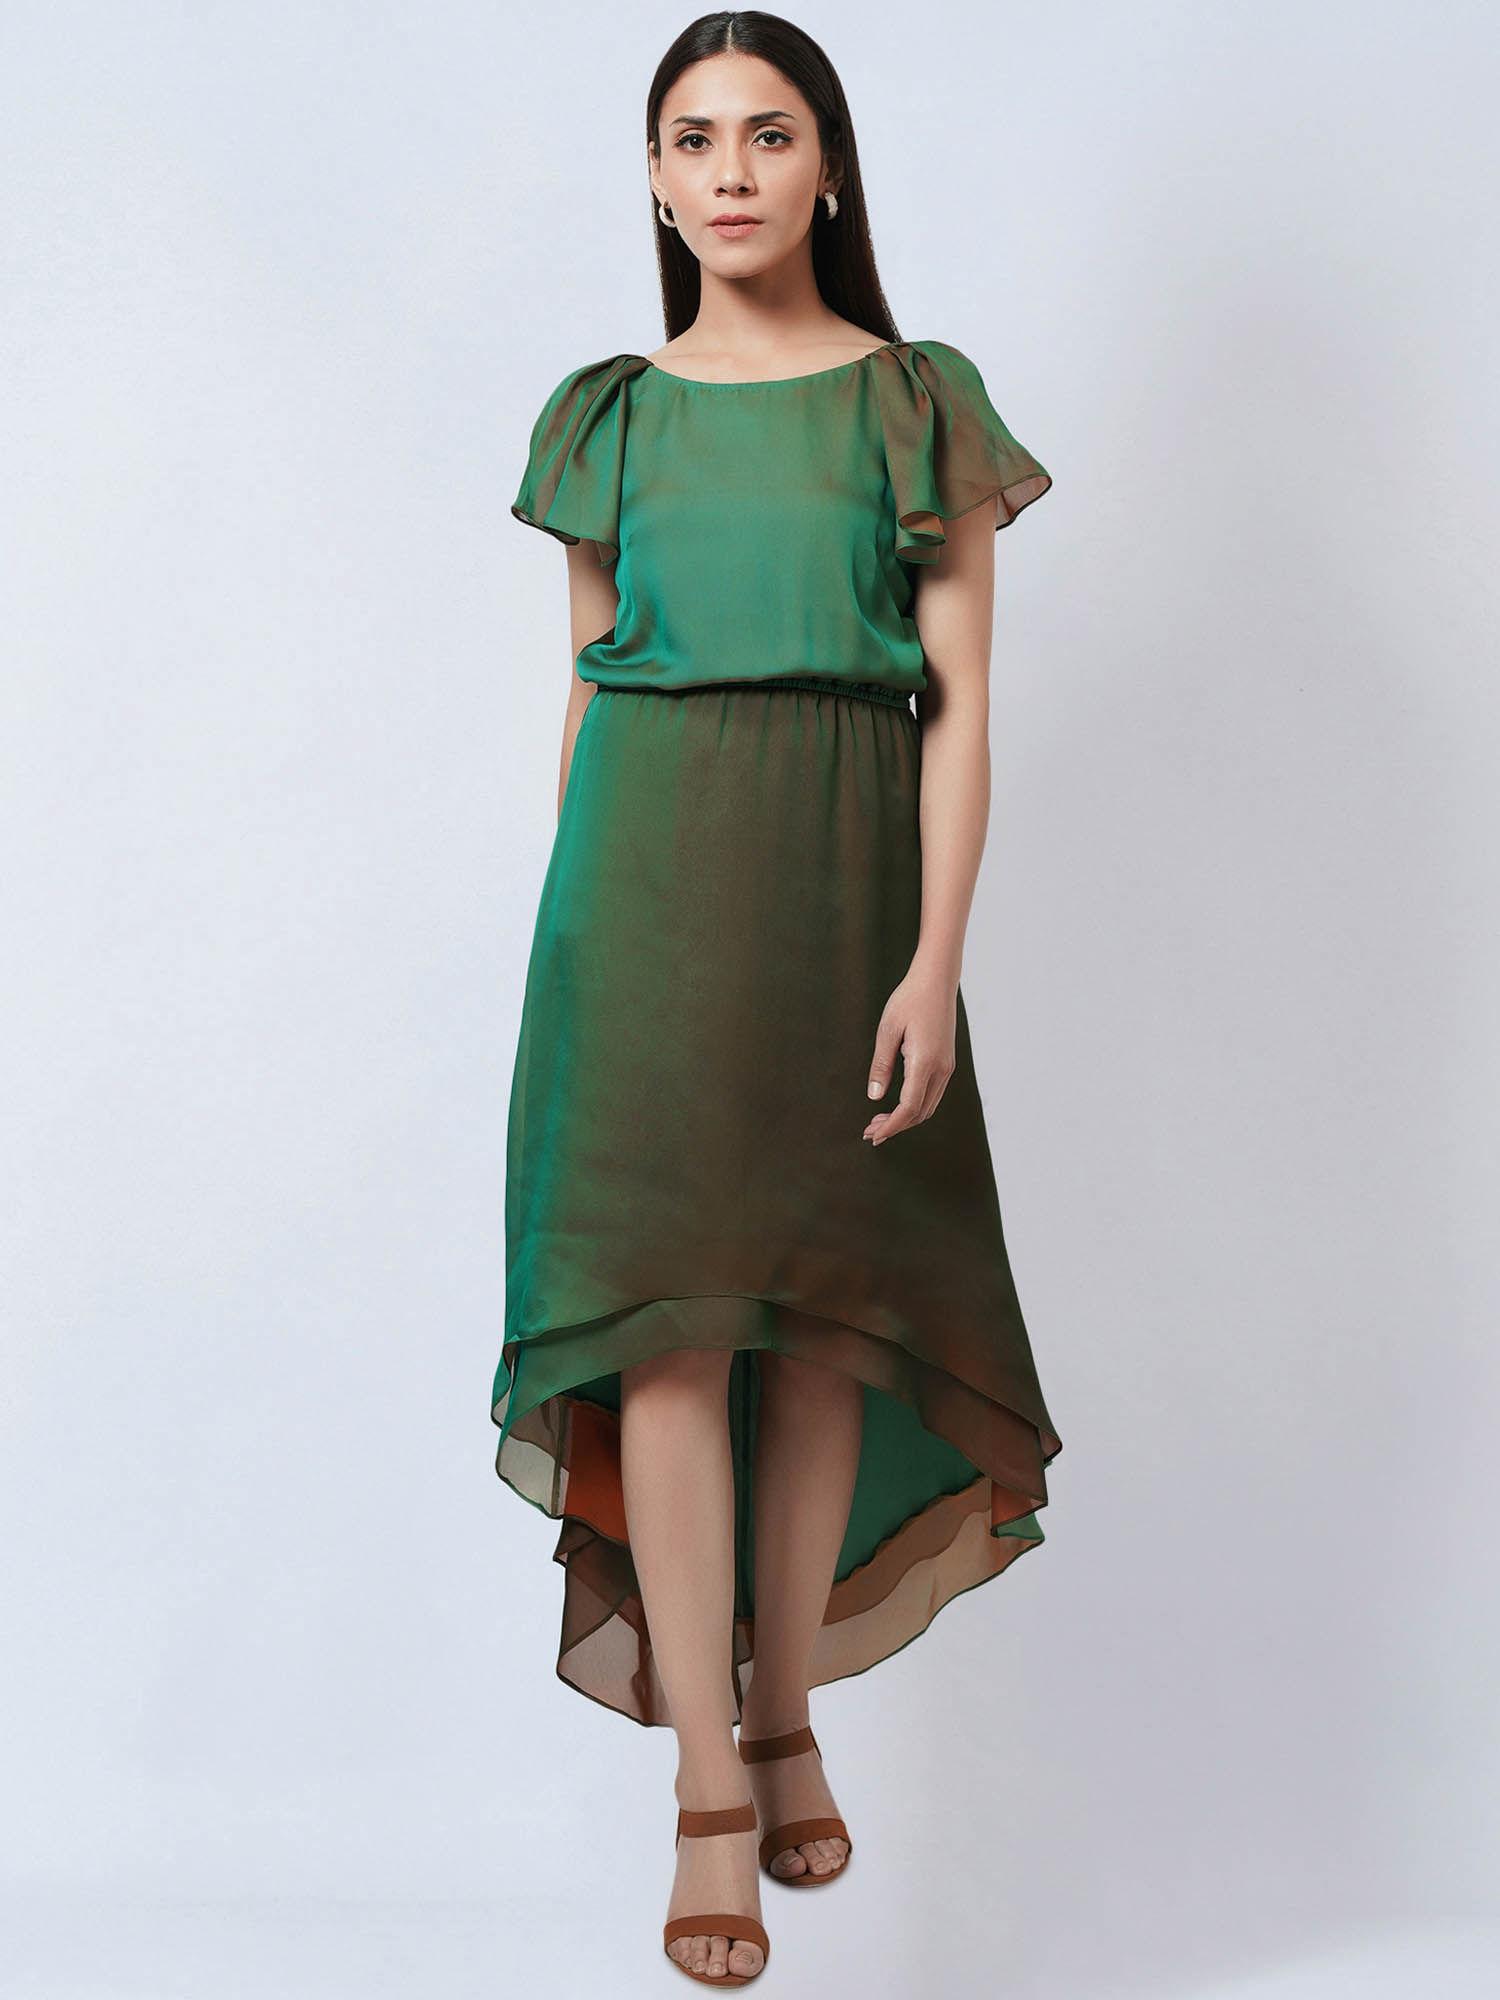 green & bronze asymmetrical dress